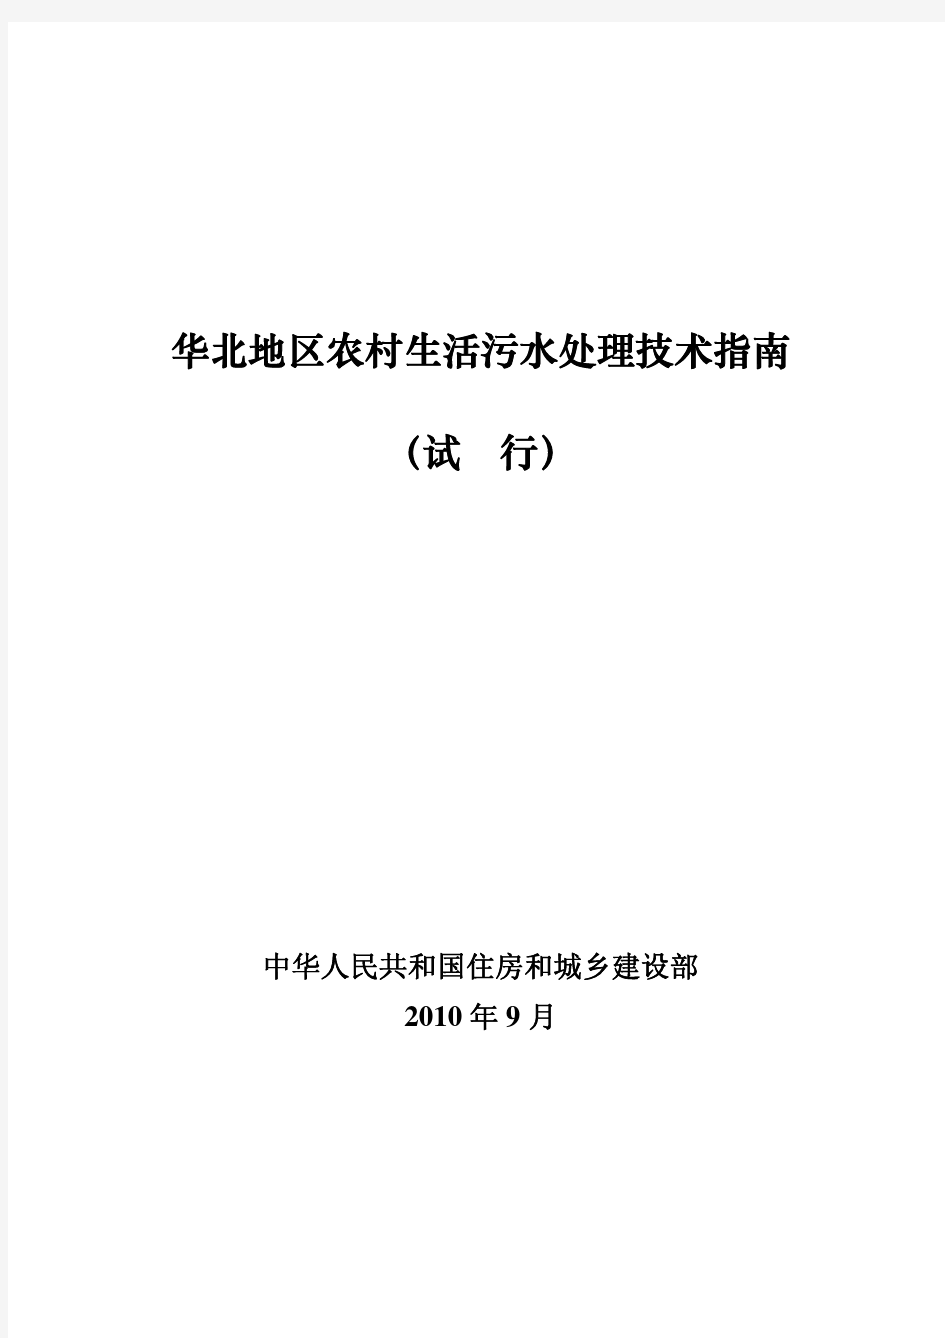 3、华北地区农村生活污水处理技术指南